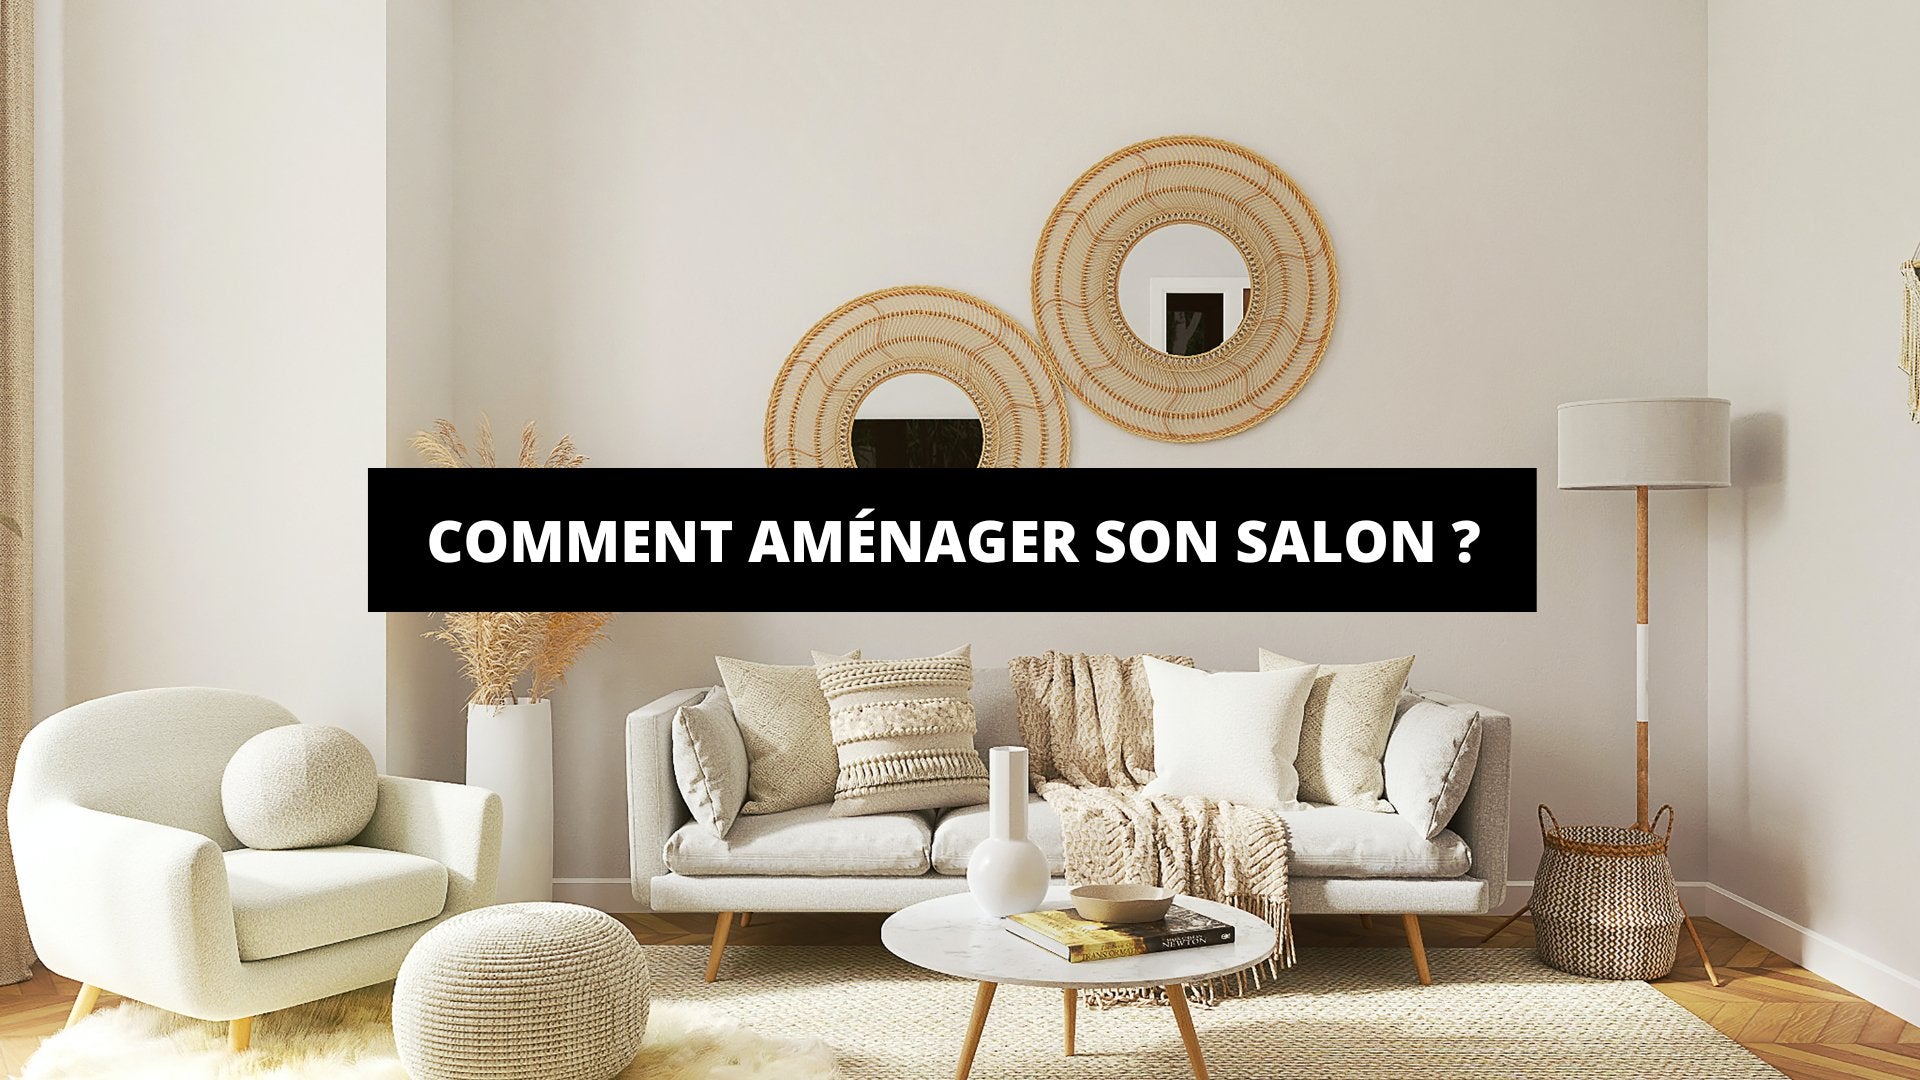 Comment Aménager Son Salon ? - The Art Avenue